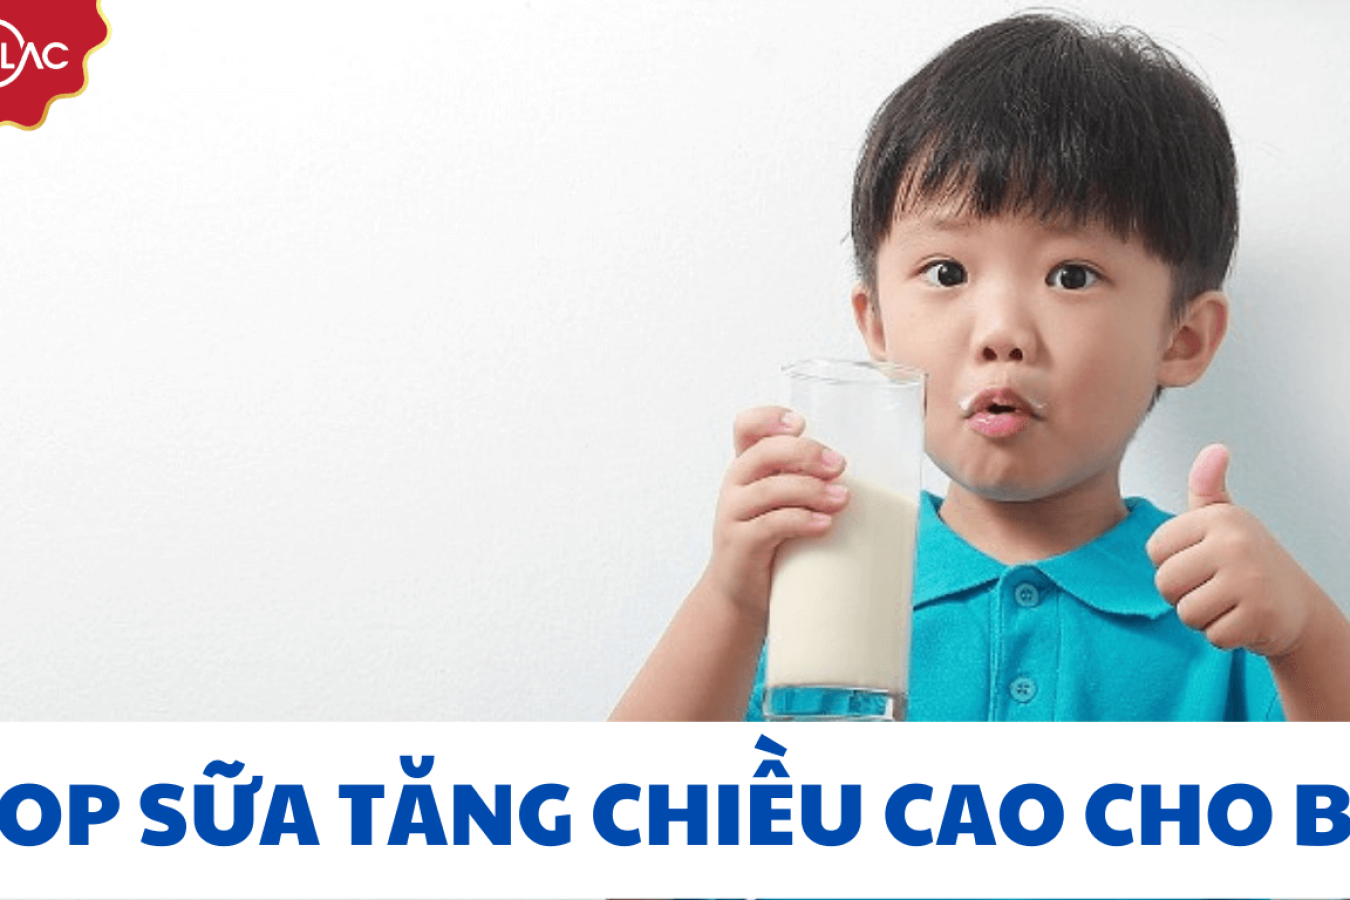 TOP sữa tăng chiều cao cho bé được khuyên dùng nhất hiện nay